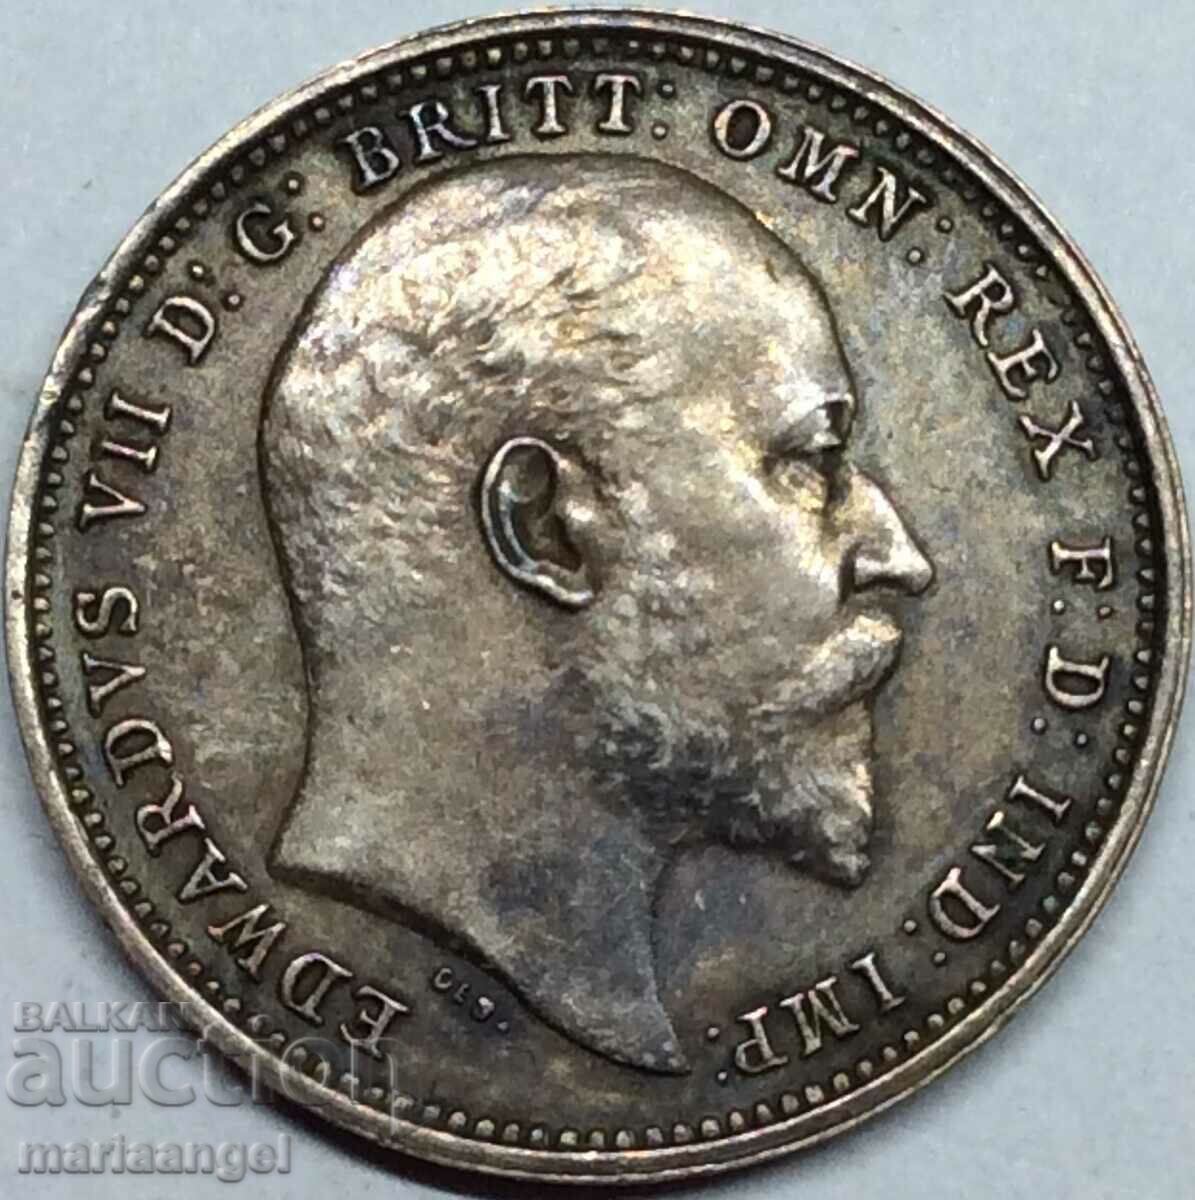 4 пенса 1905 Великобритания Маунди Едвард VII (1848-1910)